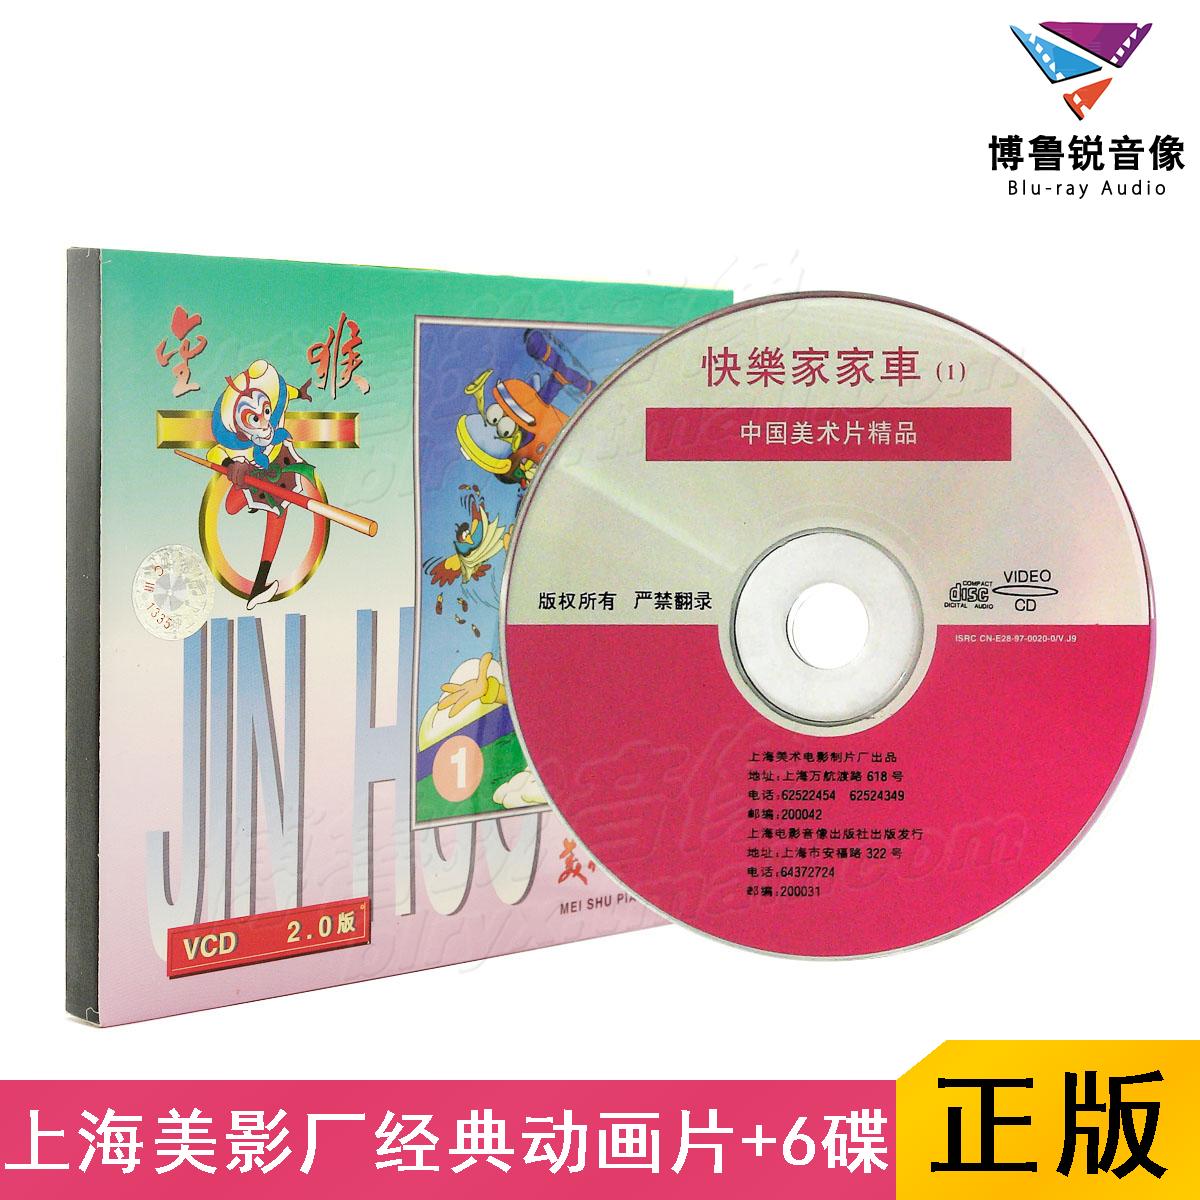 【订货】上海美影厂快乐家家车123456动画合集 国漫经典正版VCD碟